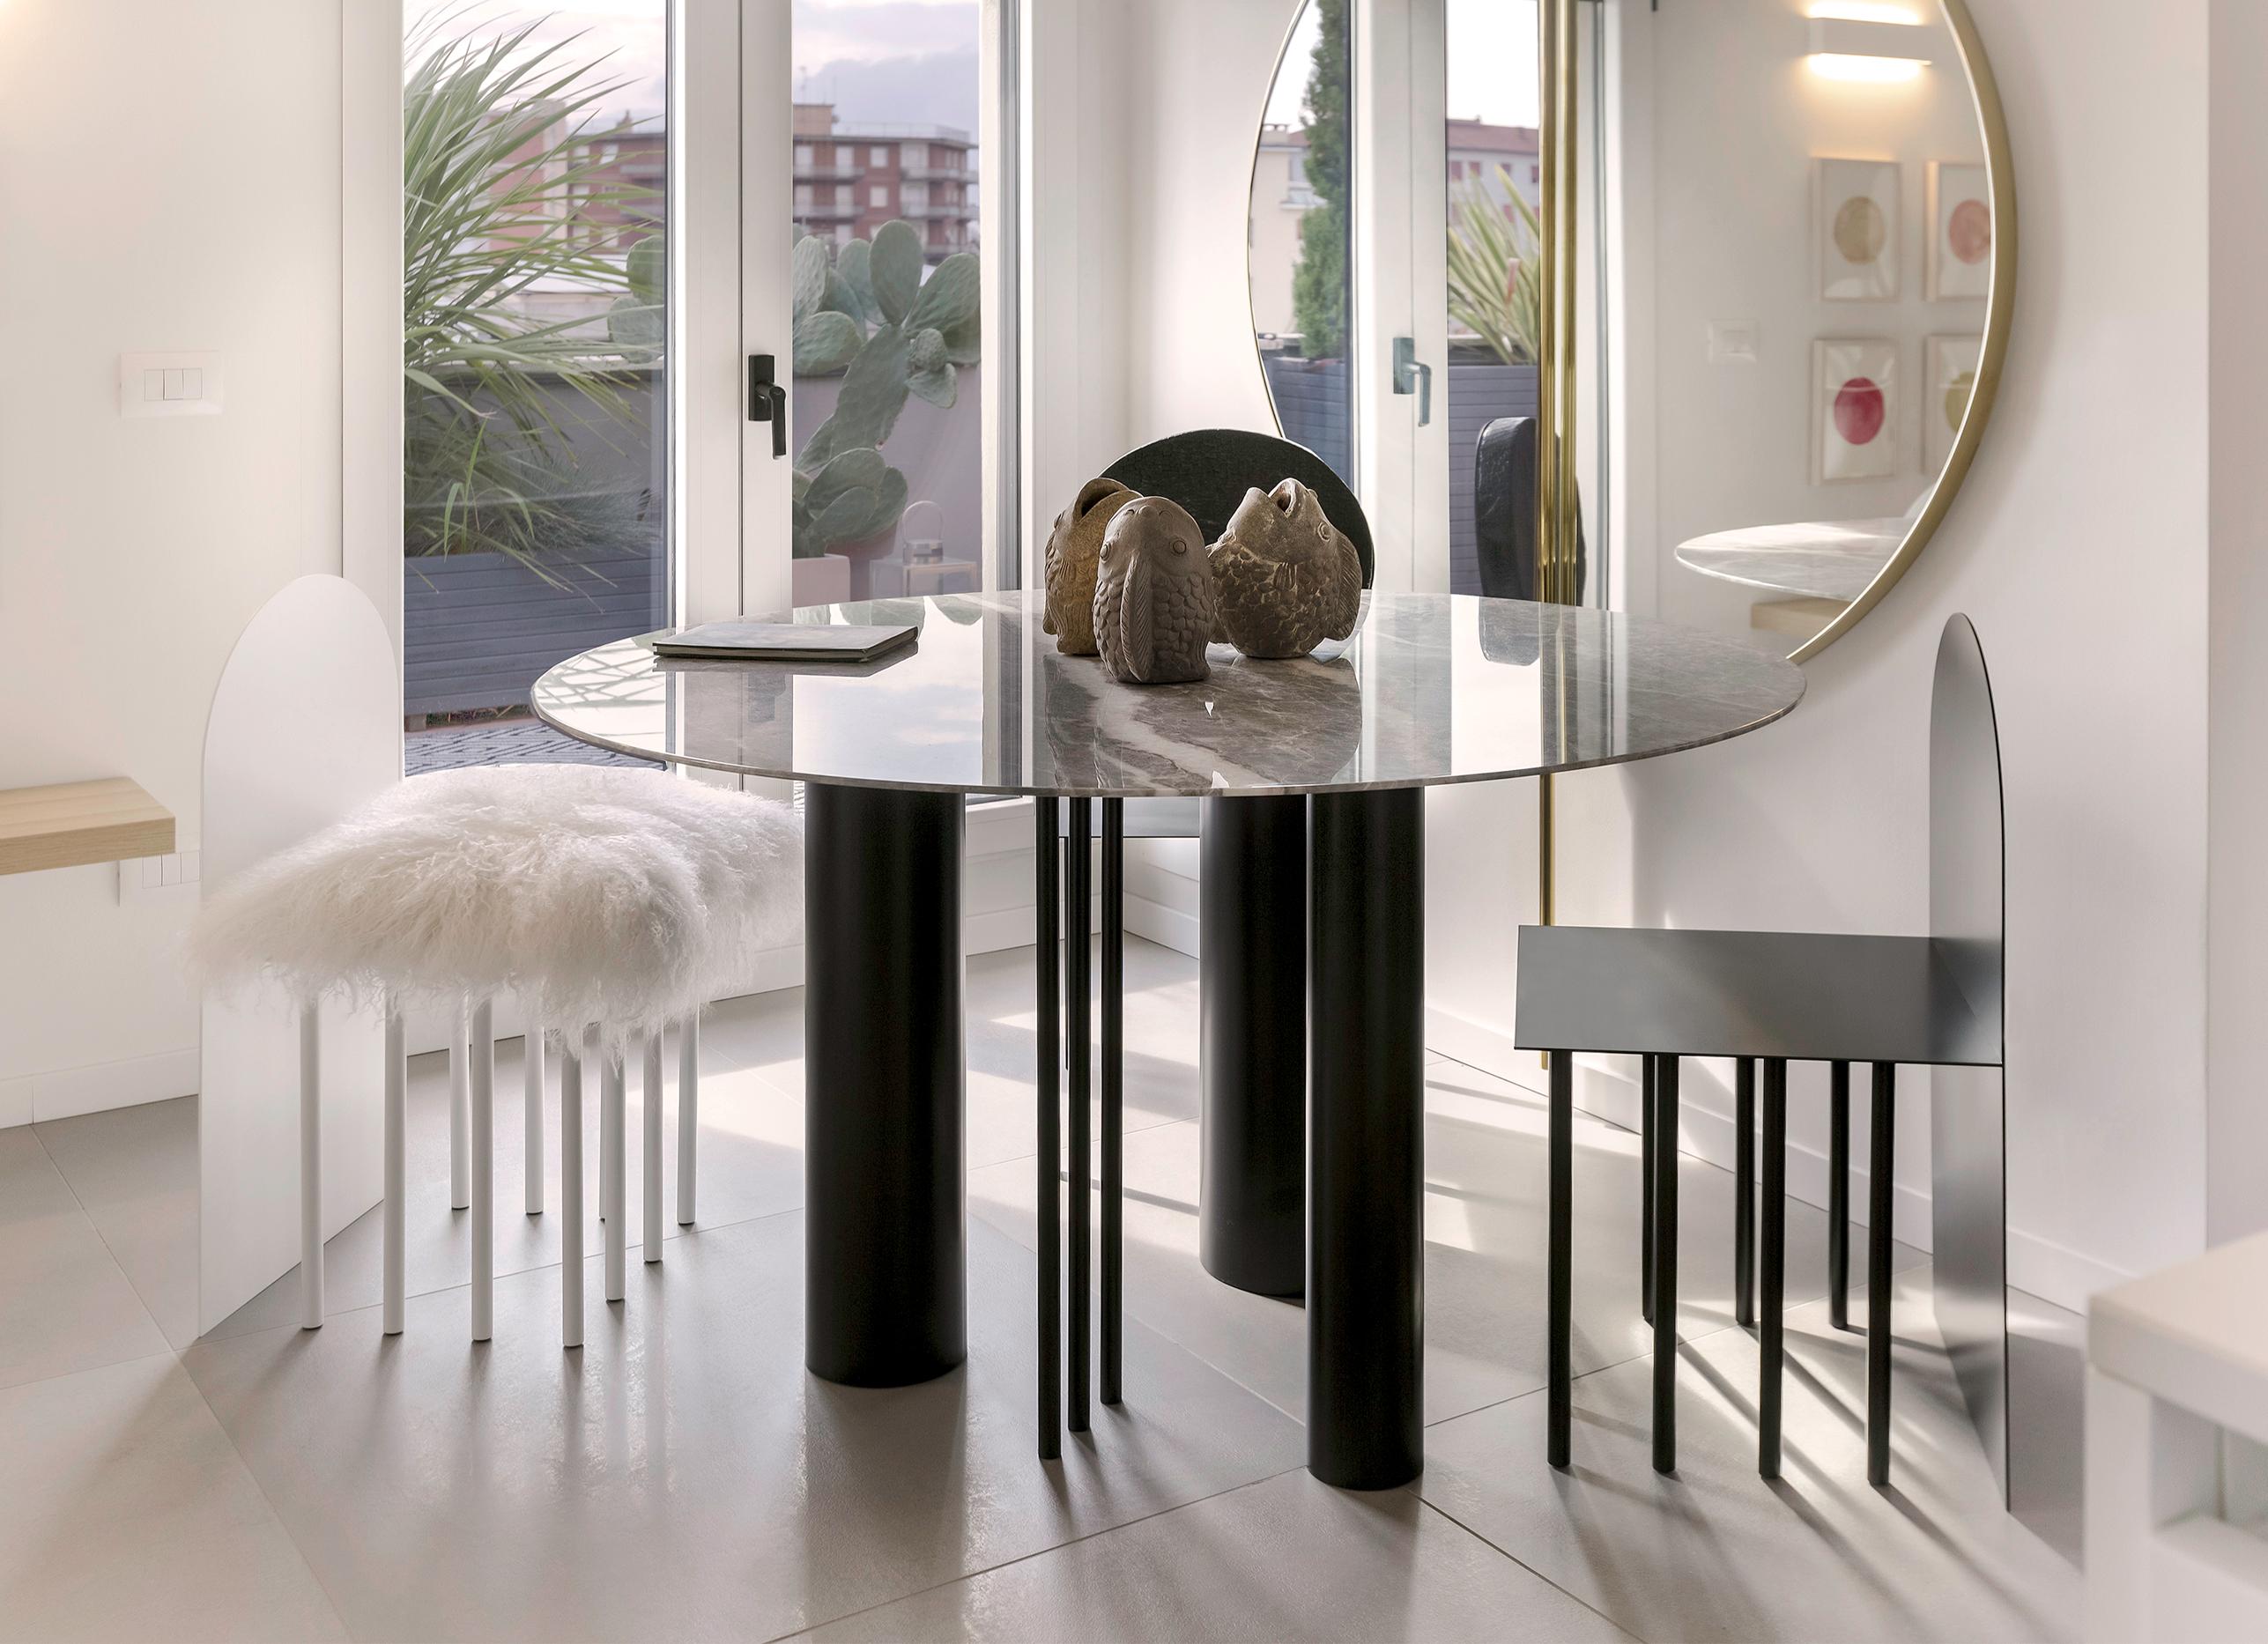 Der elegante Terra Esstisch will das Symbol eines Weges der Exemplifizierung von Formen sein;
Die große Marmorplatte und das Metallgestell machen diesen Tisch zu einer äußerst raffinierten Ergänzung. 
Mit seinem exklusiven Design und seiner